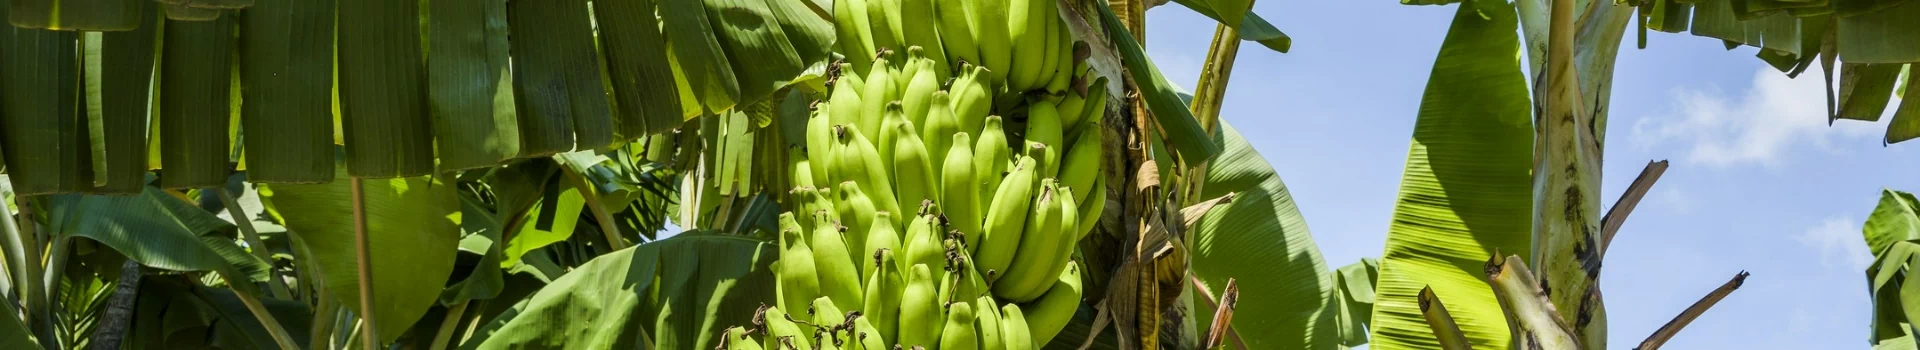 zielone banany